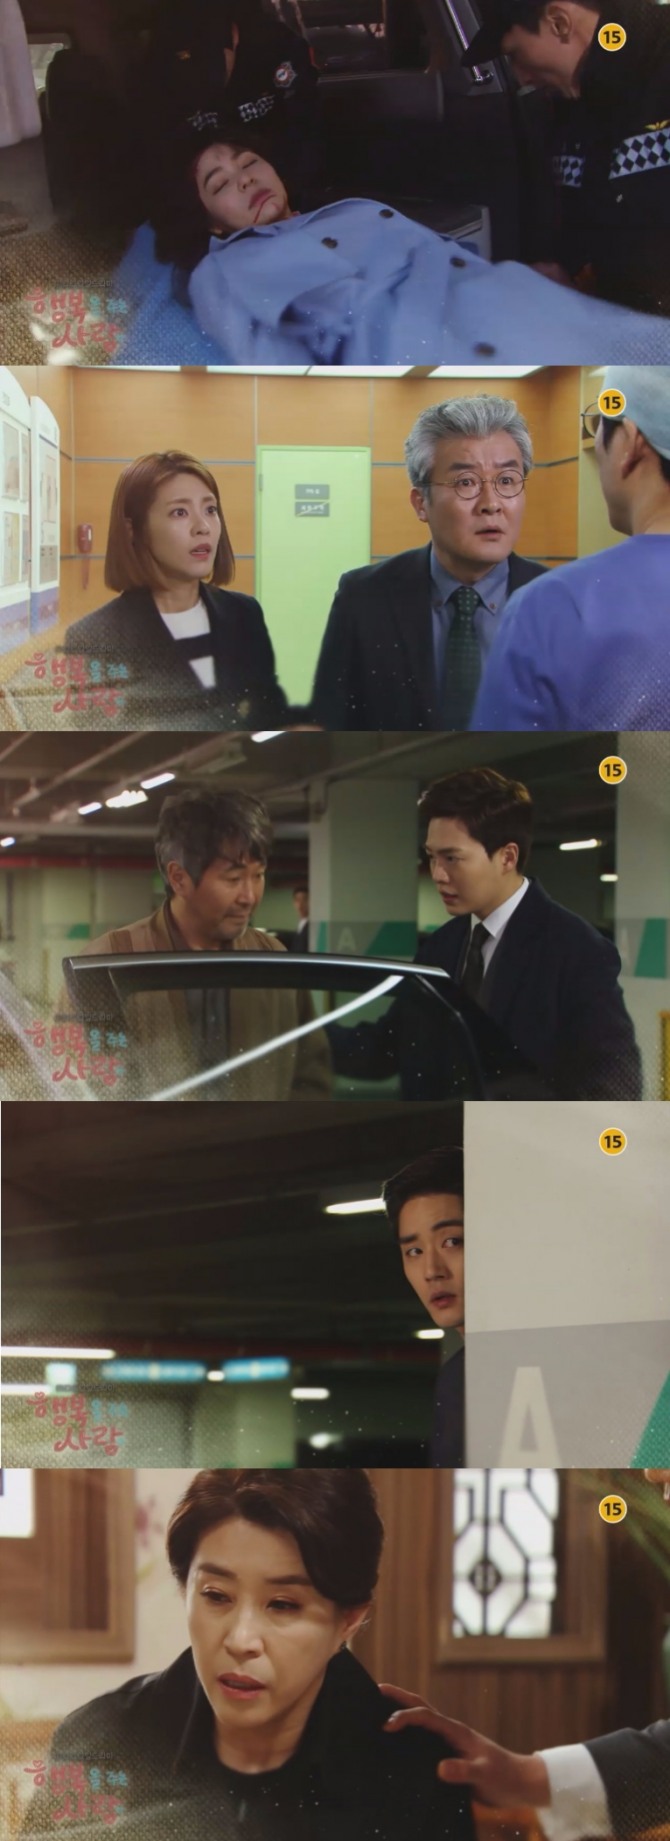 28일 밤 방송되는 MBC 일일드라마 '행복을 주는 사람' 87회에서는 이건우(손승원)가 감금된 임시원(조덕현)을 구출하는 장면이 그려진다. /사진=MBC 영상 캡처